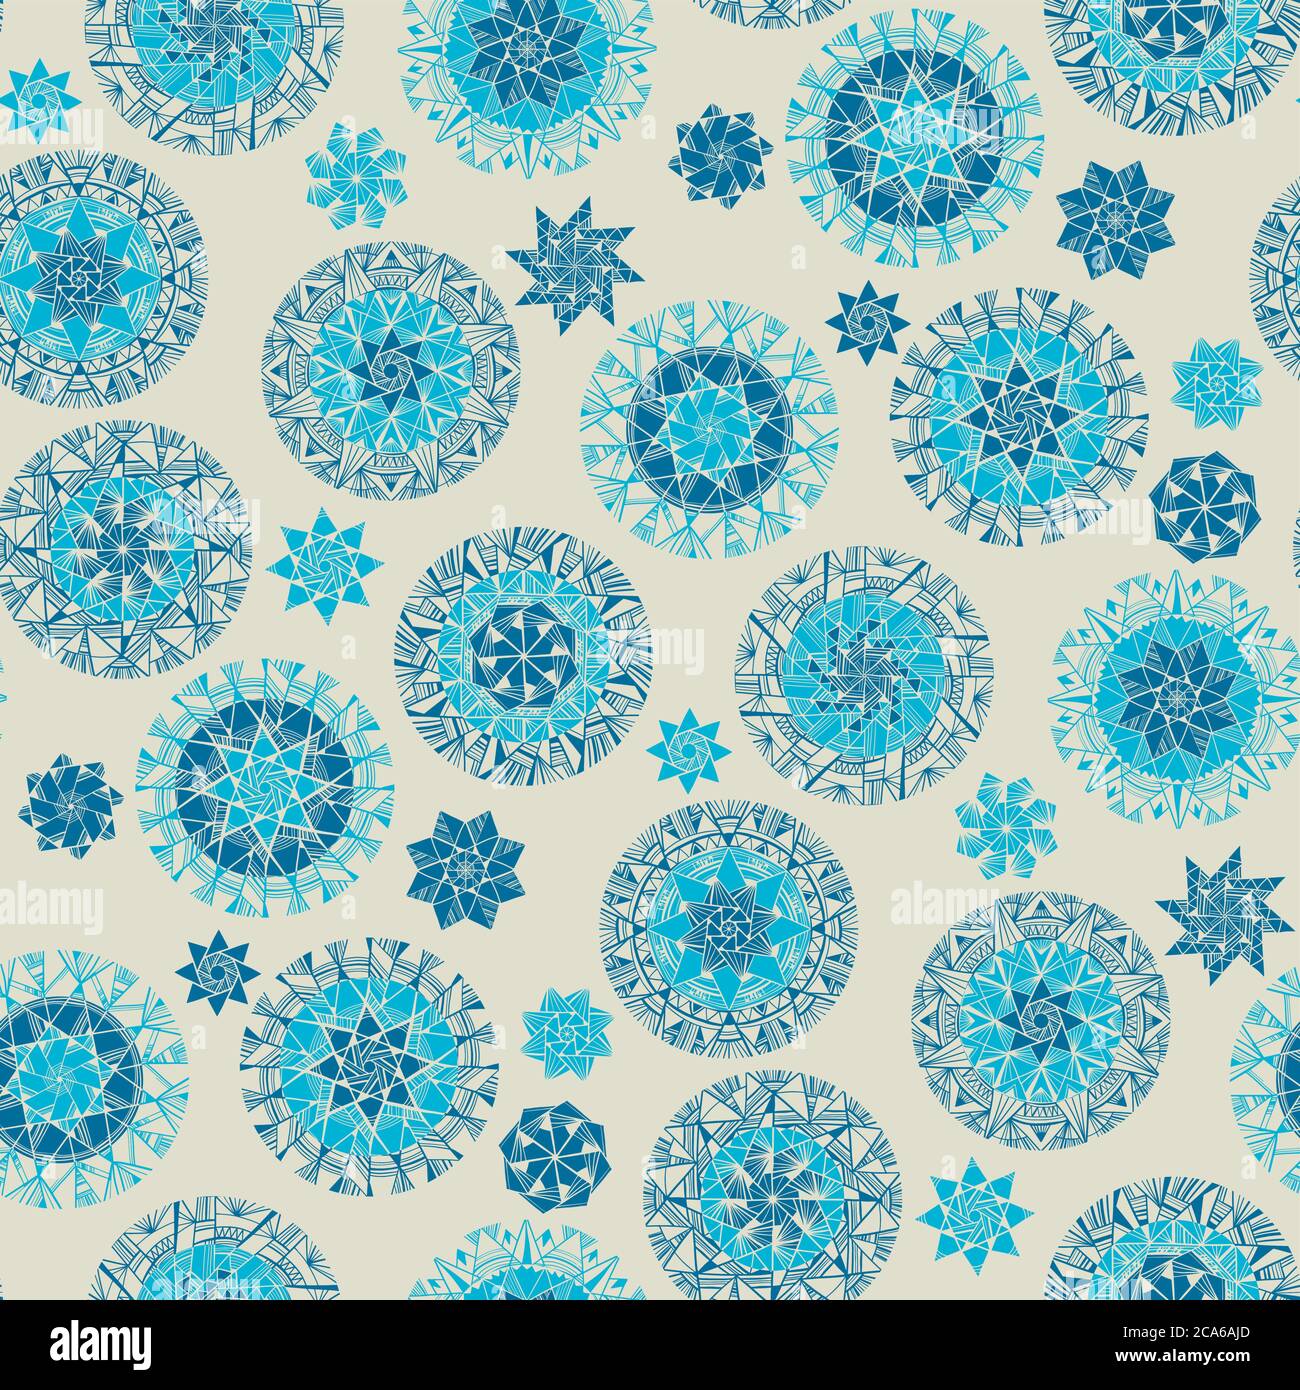 Klassische blaue Farbe Schneeflocke nahtlose Muster für Hintergrund, Stoff, Textil, Wrap, Oberfläche, Web-und Print-Design. Blau traditionellen Folk-Stil Winter Stock Vektor